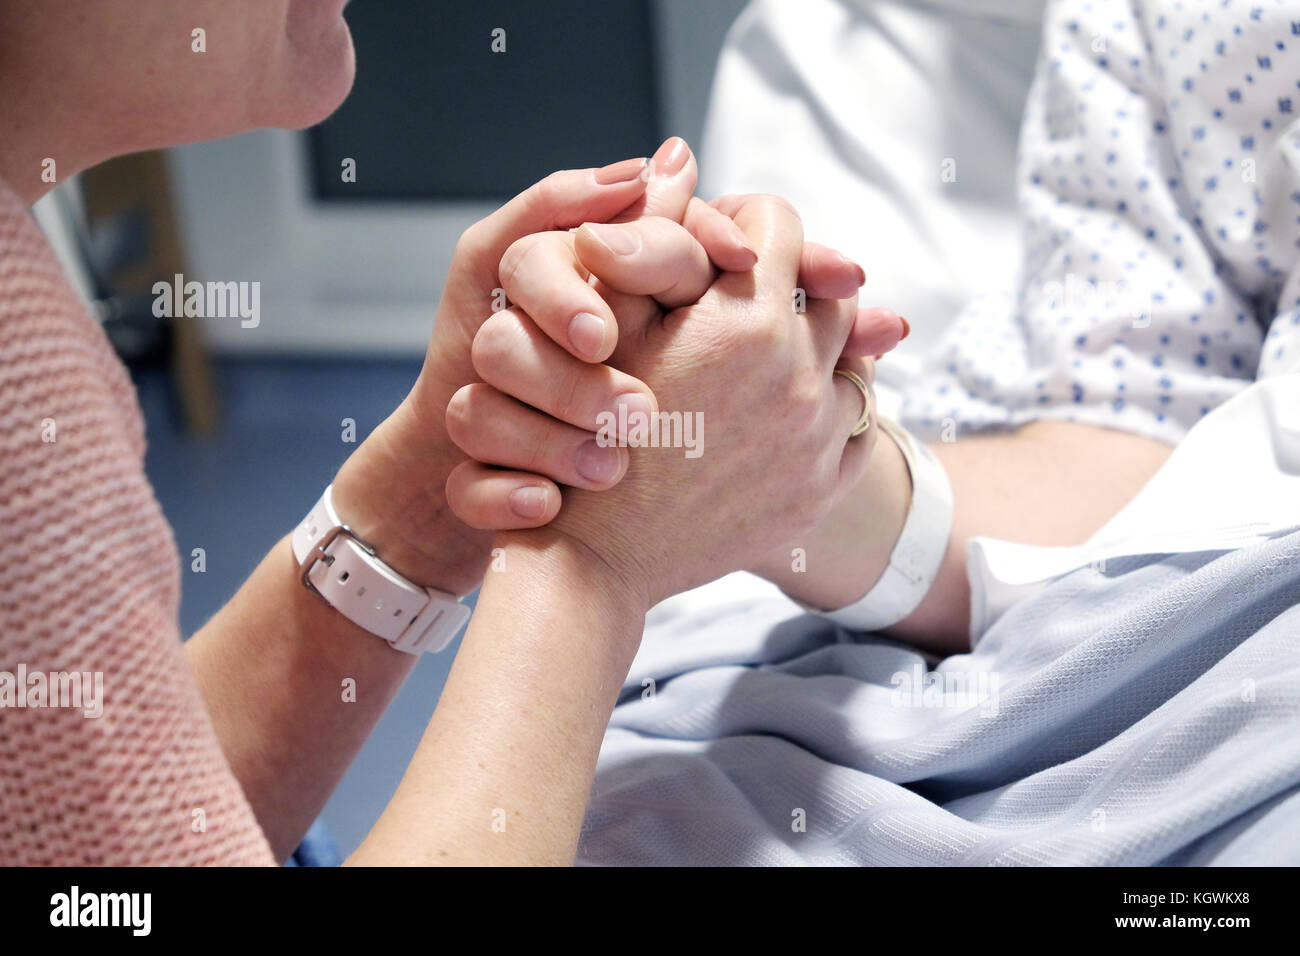 Una madre de broches de la mano de su hijo, que está postrado en la cama de un hospital. ofreciendo apoyo como empieza su recuperación, tomado en Bristol, Reino Unido Foto de stock